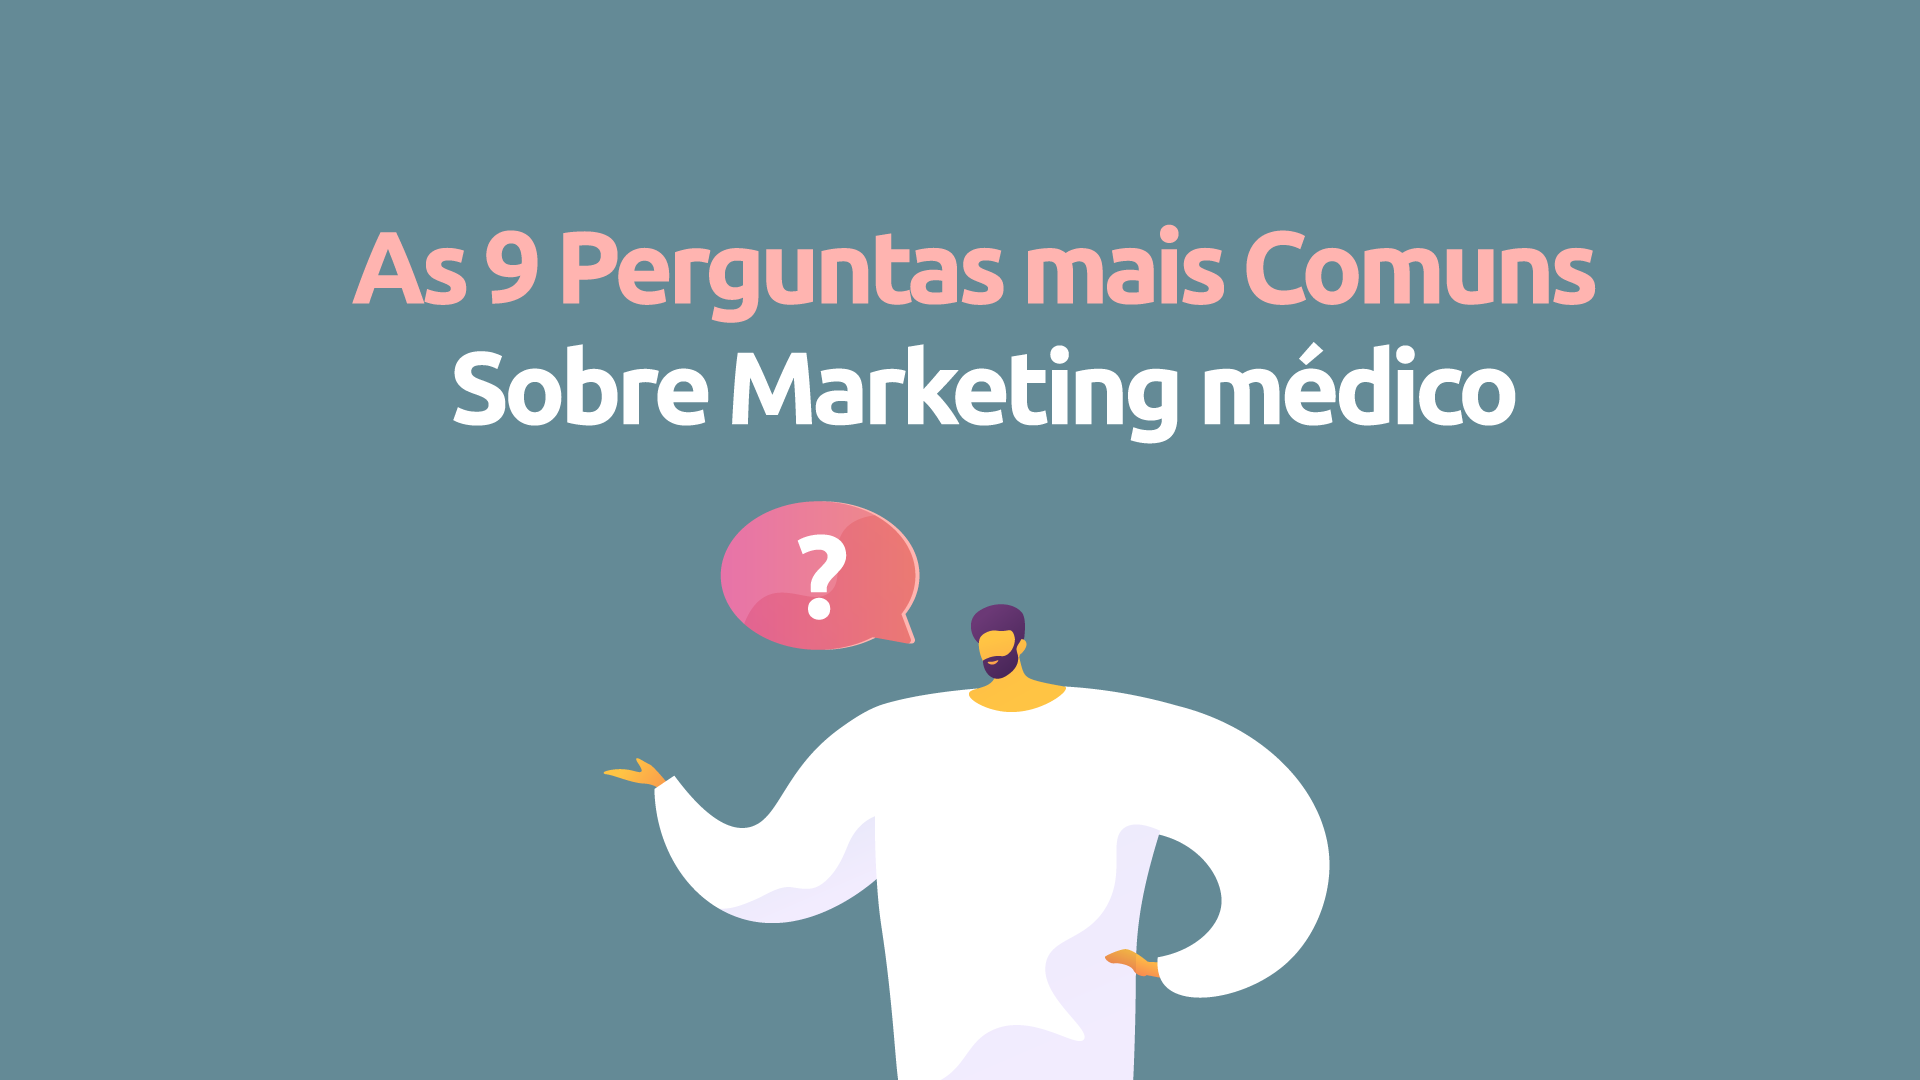 As 9 perguntas mais comuns sobre marketing médico